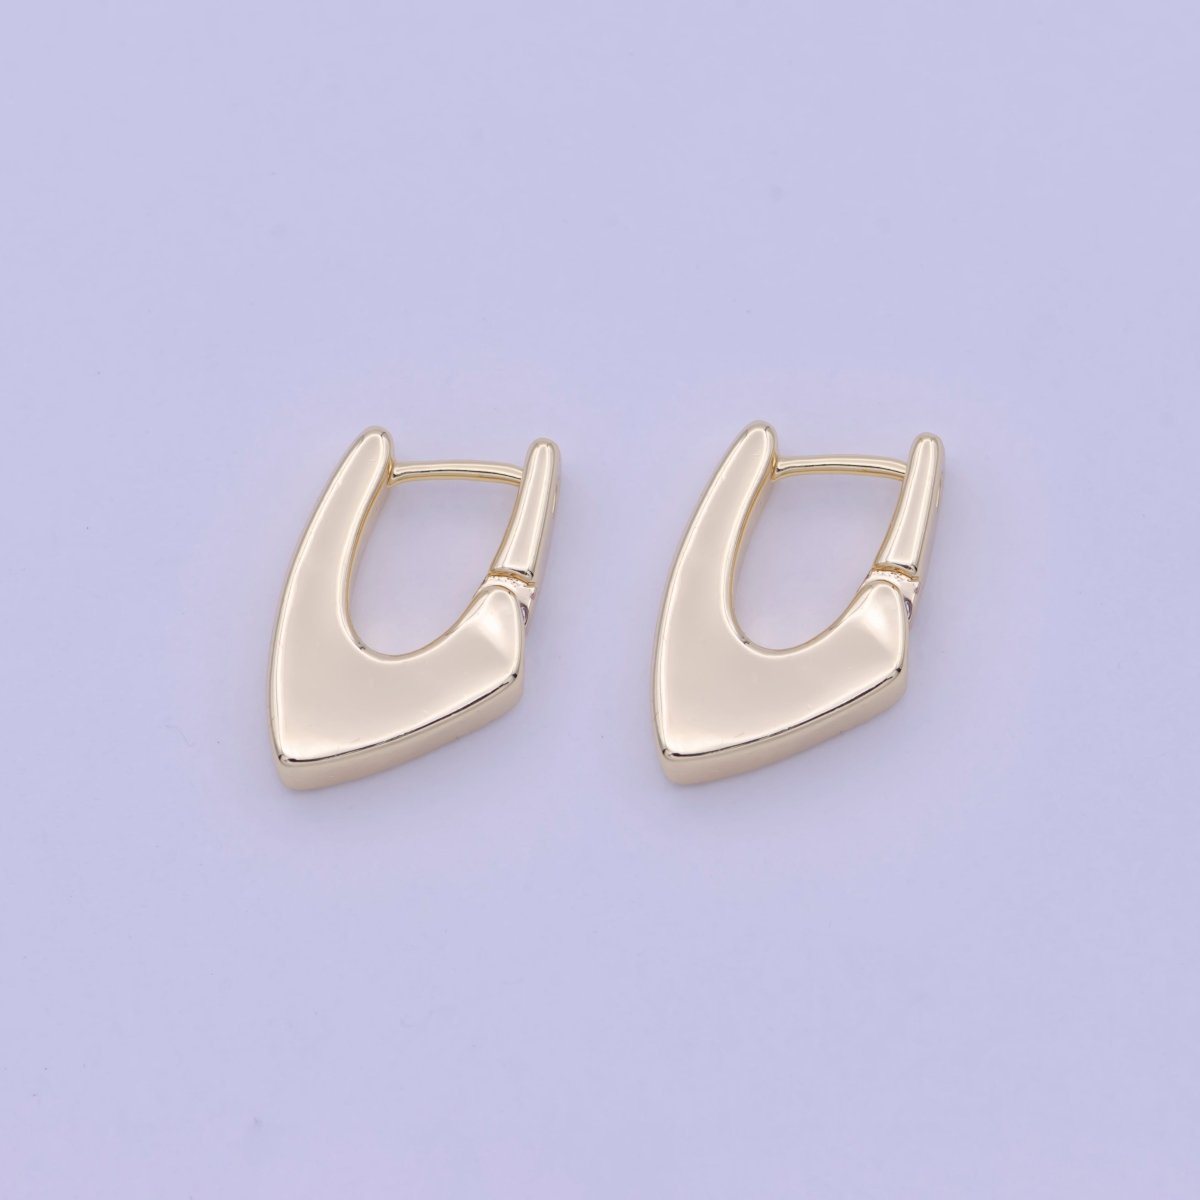 Modern Hoop Earrings • 14k Gold Filled Dainty Earrings • Huggie Hoops Earrings • Minimalist Earrings Wholesale Jewelry Q-176 - DLUXCA